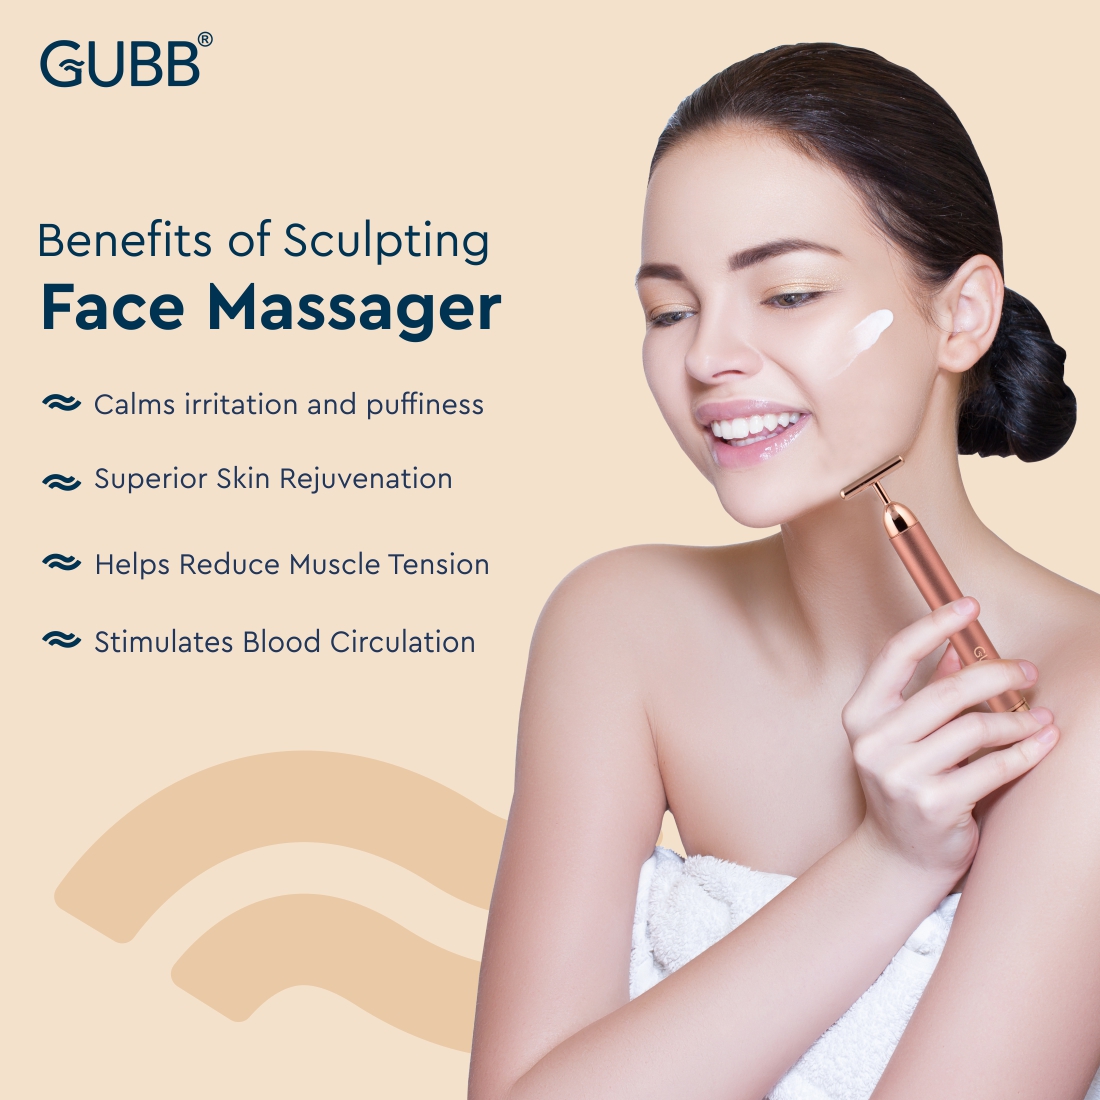 Sculpting Face Massager